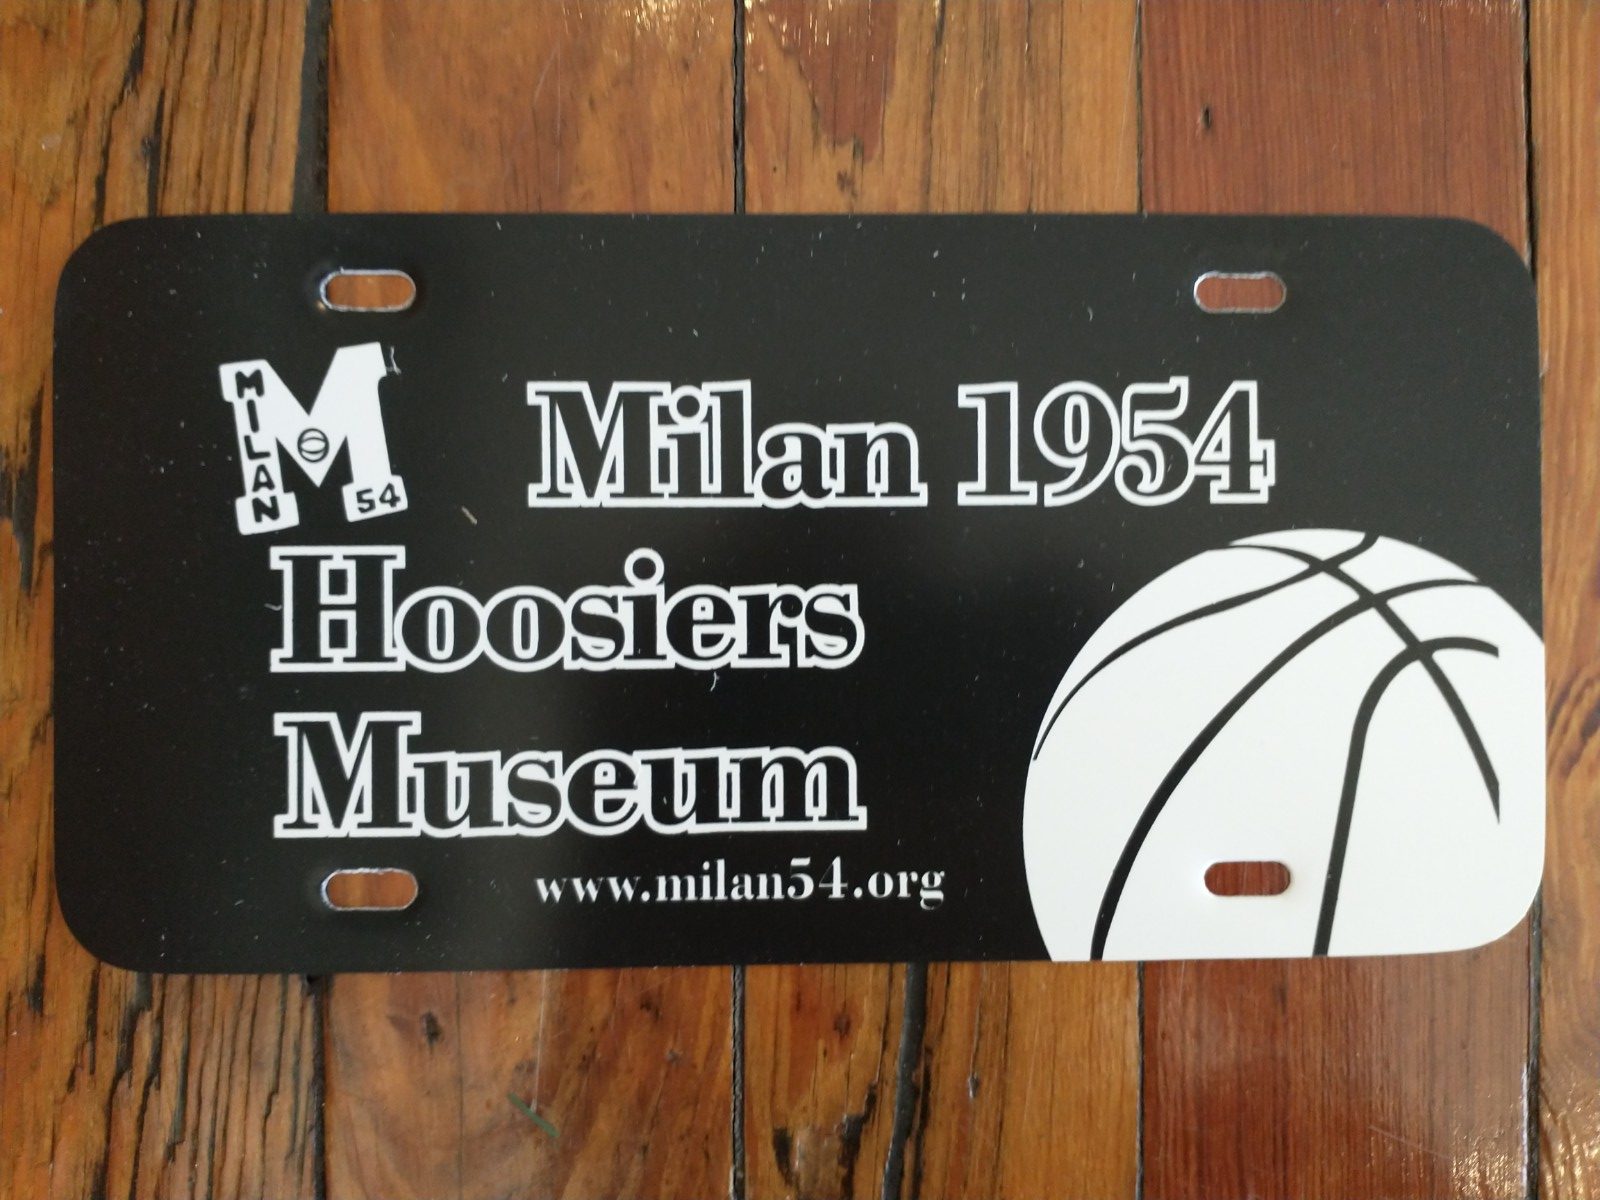 Hoosiers - Milan 1954 Museum